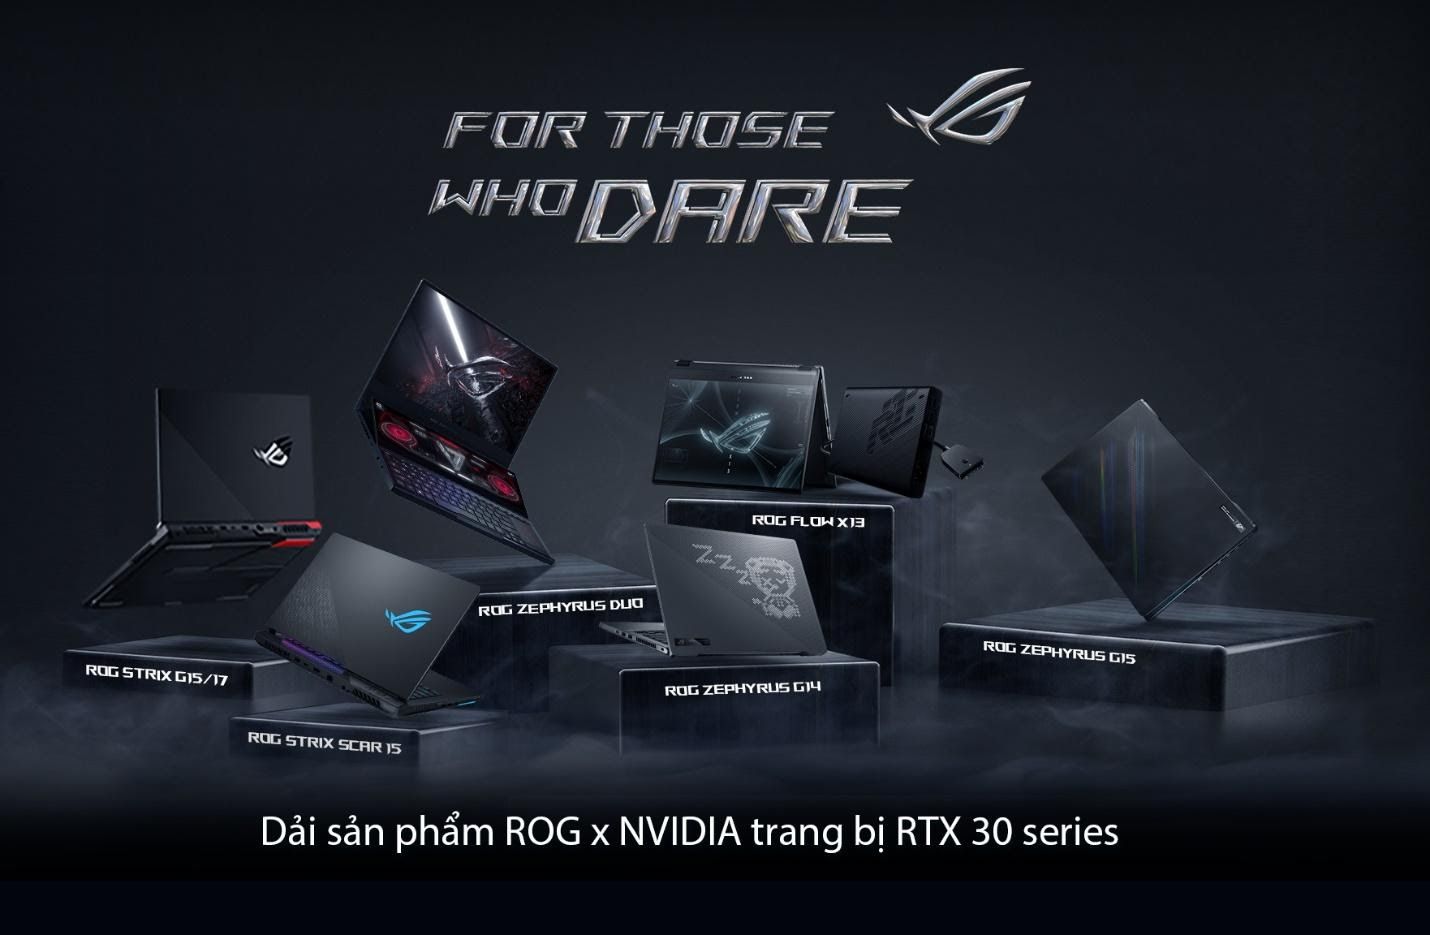 ASUS ROG công bố laptop gaming 2-trong-1 Flow X13 cùng dải sản phẩm trang bị card đồ họa NVIDIA RTX 30 series